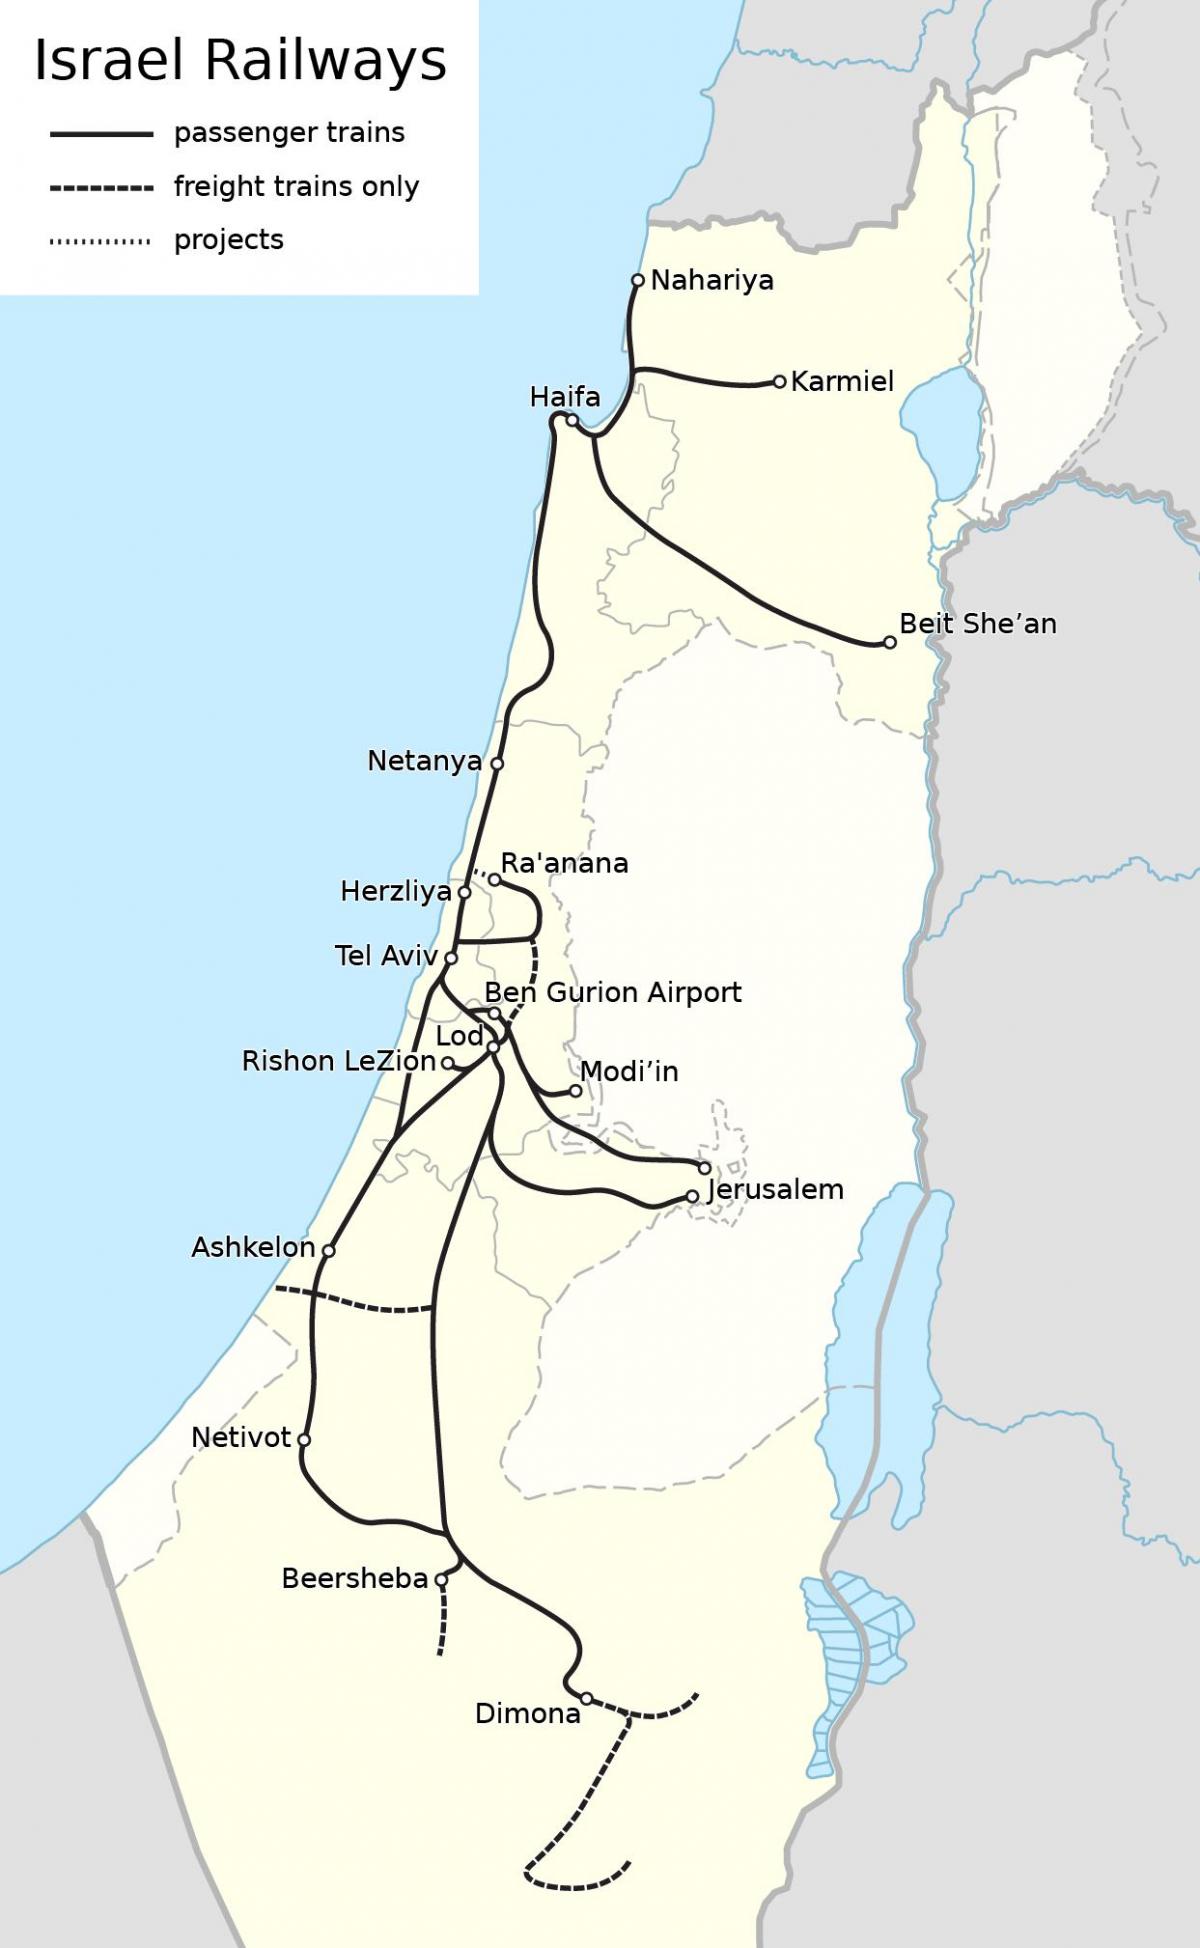 イスラエルの鉄道路線図